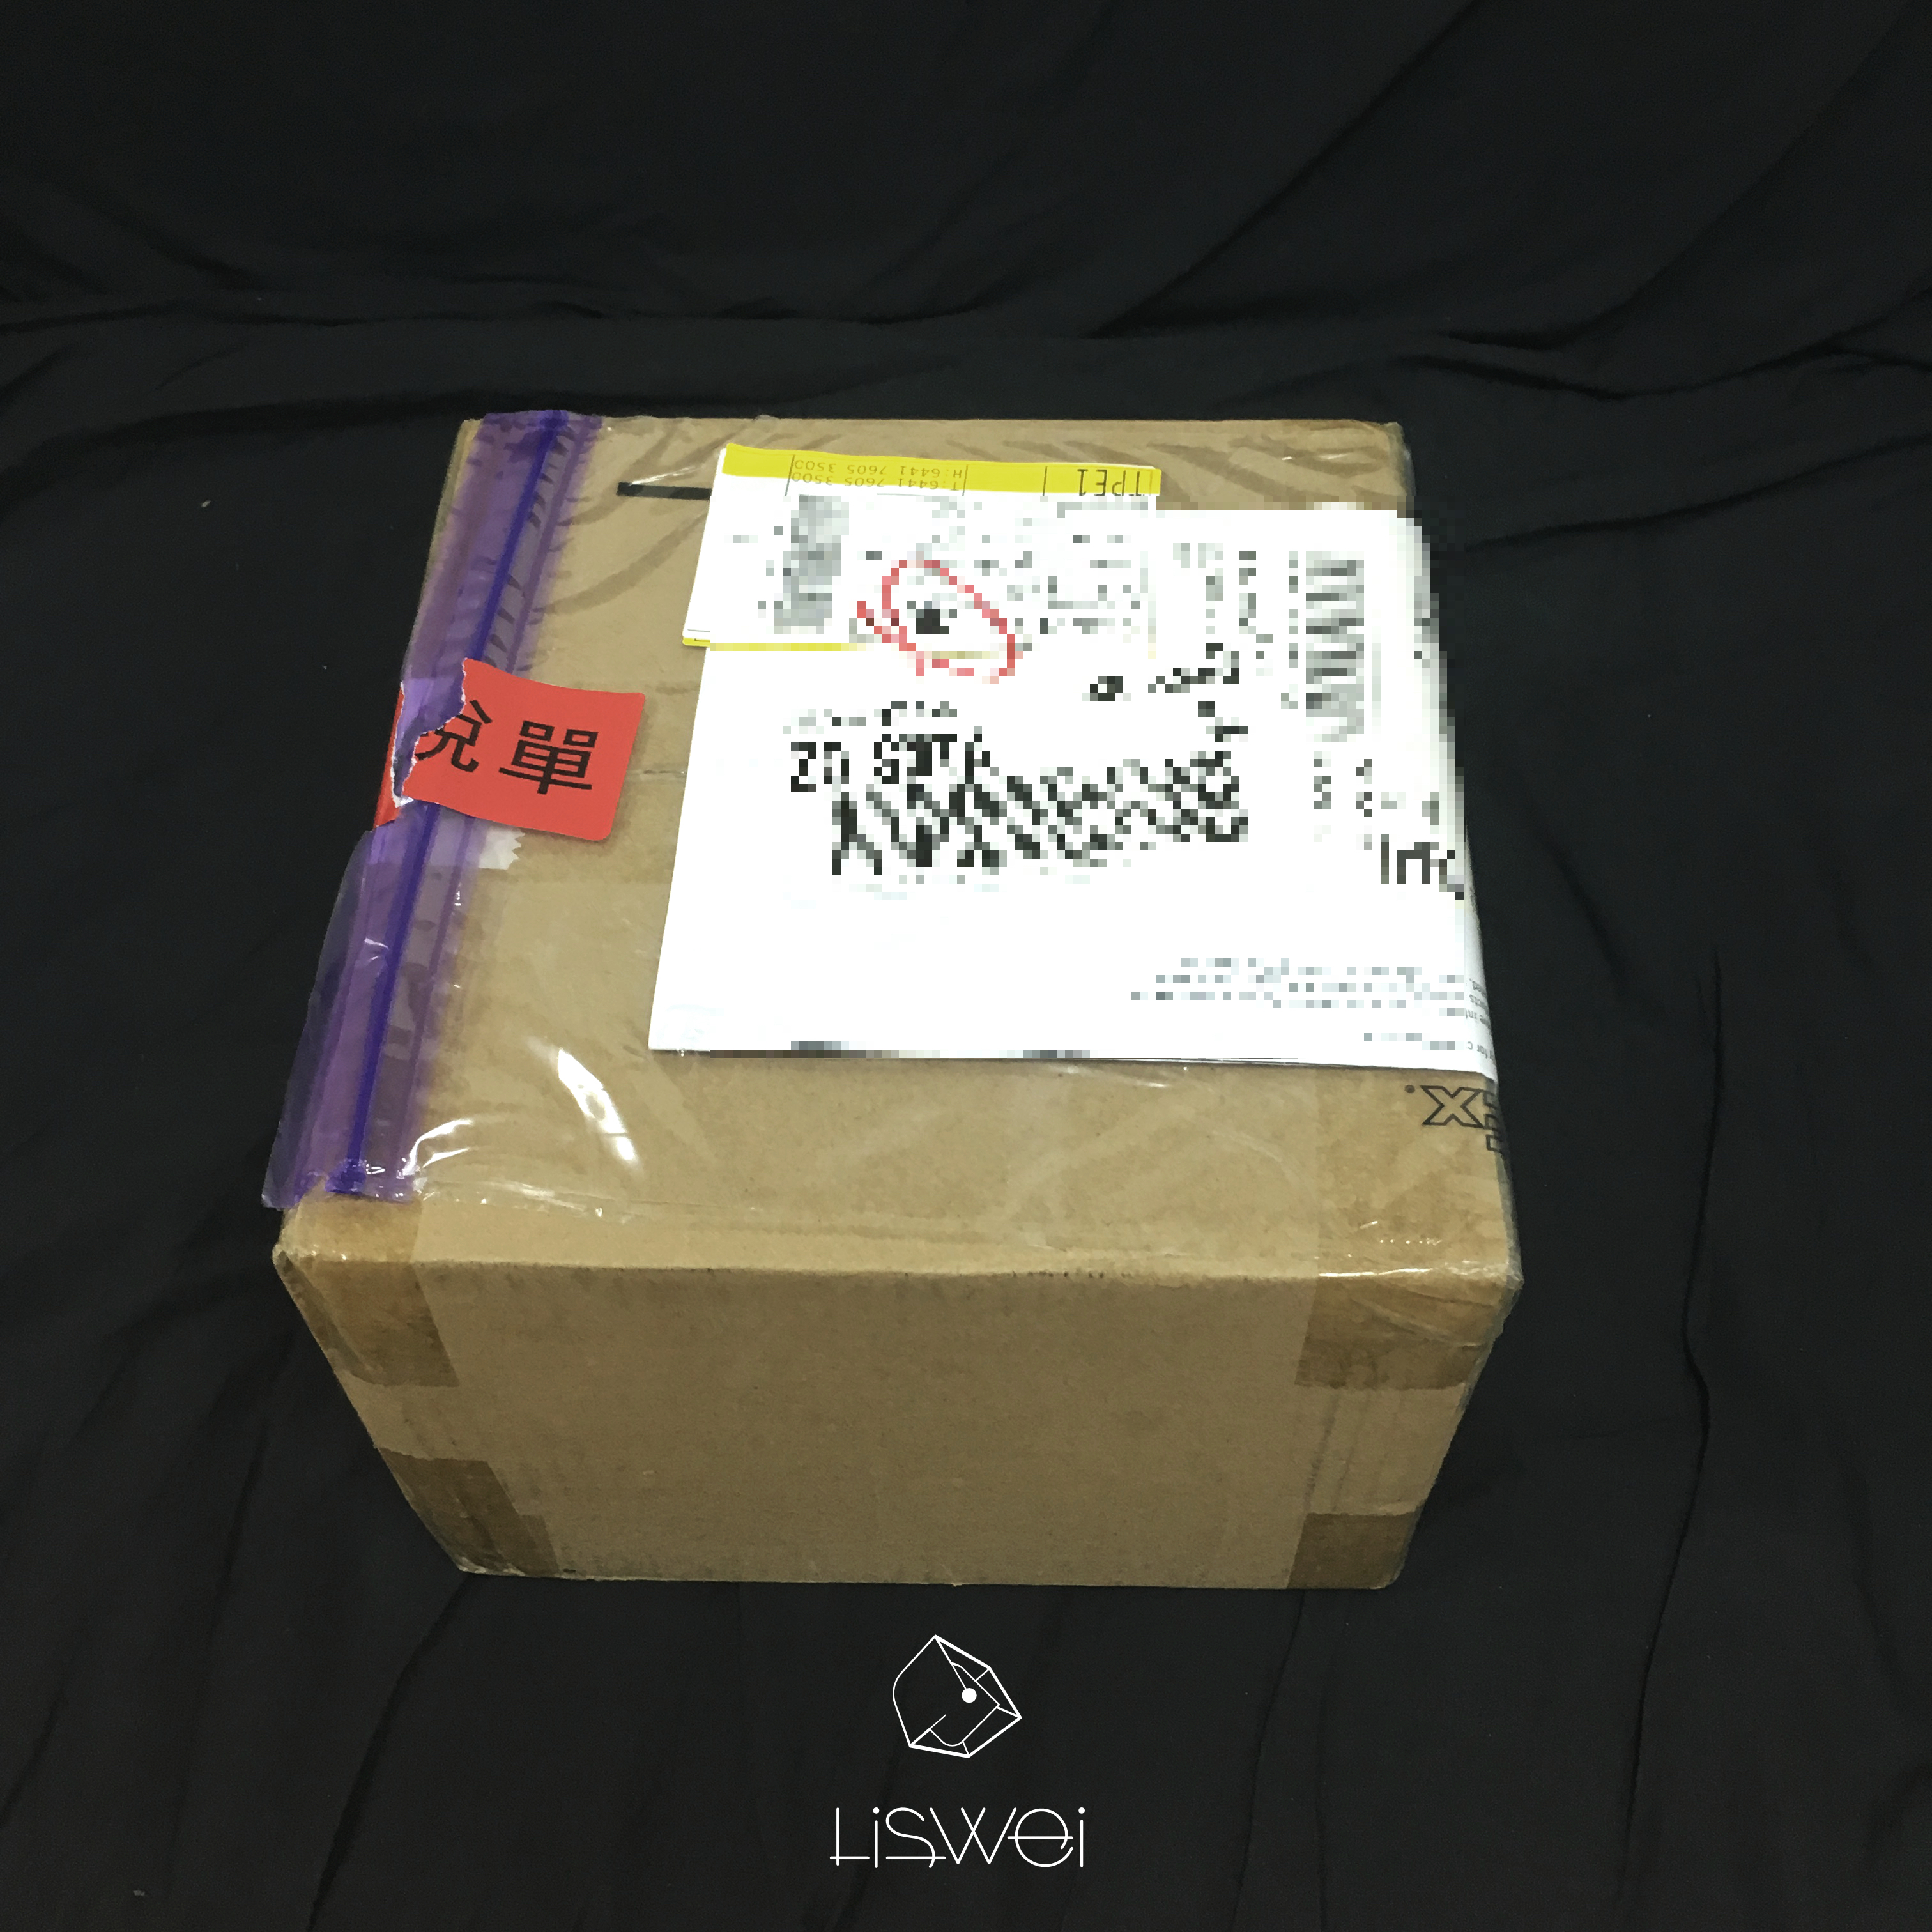 FEDEX 剛送來的時候外盒包裝是一個很普通的紙箱，看起來沒什麼特別，外袋內有你的訂購商品資料與稅單。